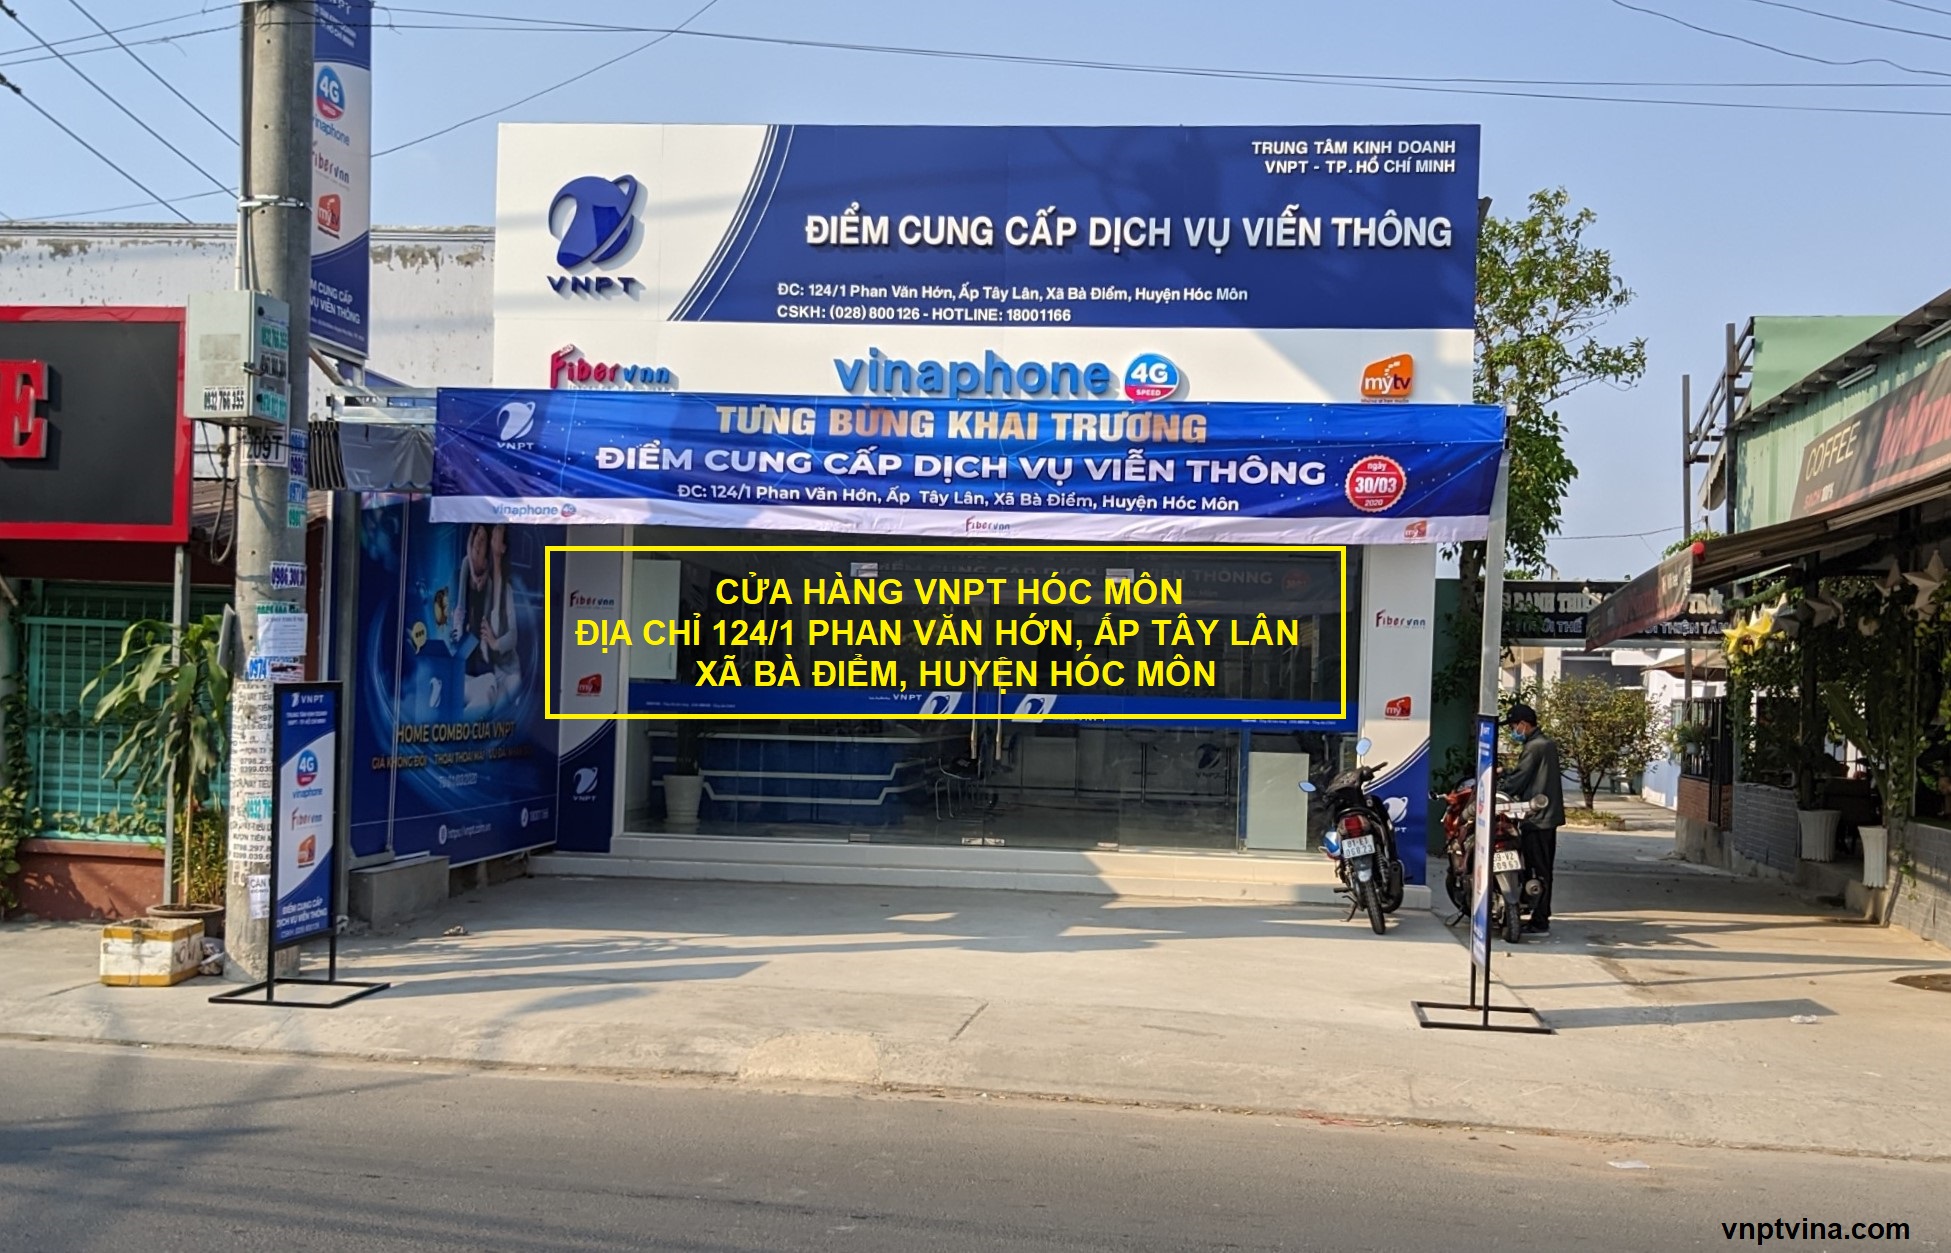 cửa hàng vnpt hóc môn 124/1 Phan Văn Hớn, ấp Tây Lân, xã Bà Điểm, huyện Hóc Môn